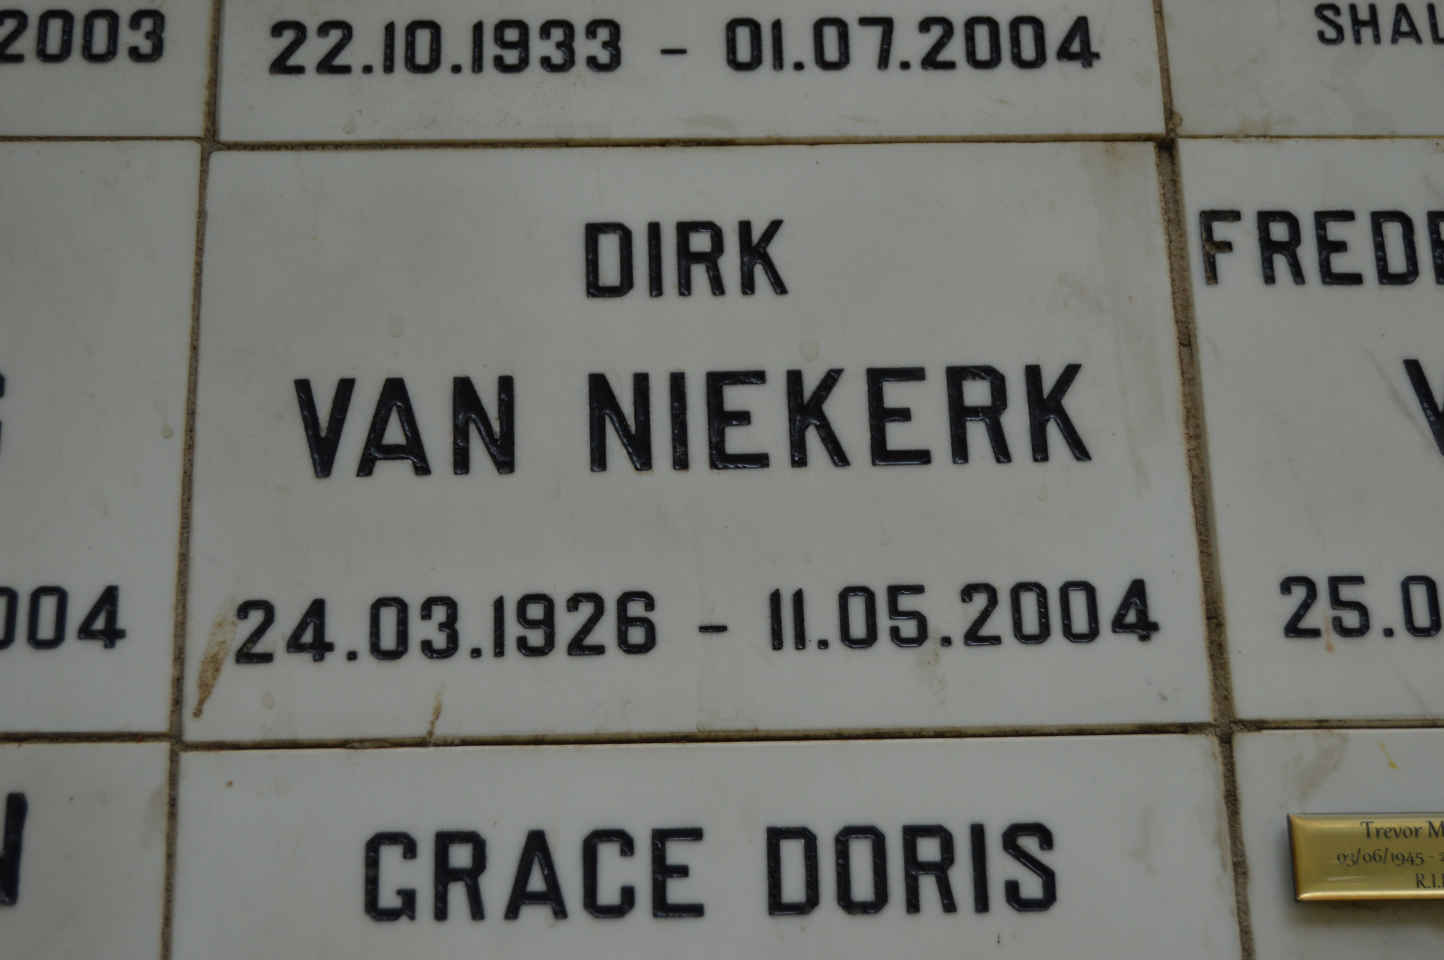 NIEKERK Dirk, van 1926-2004